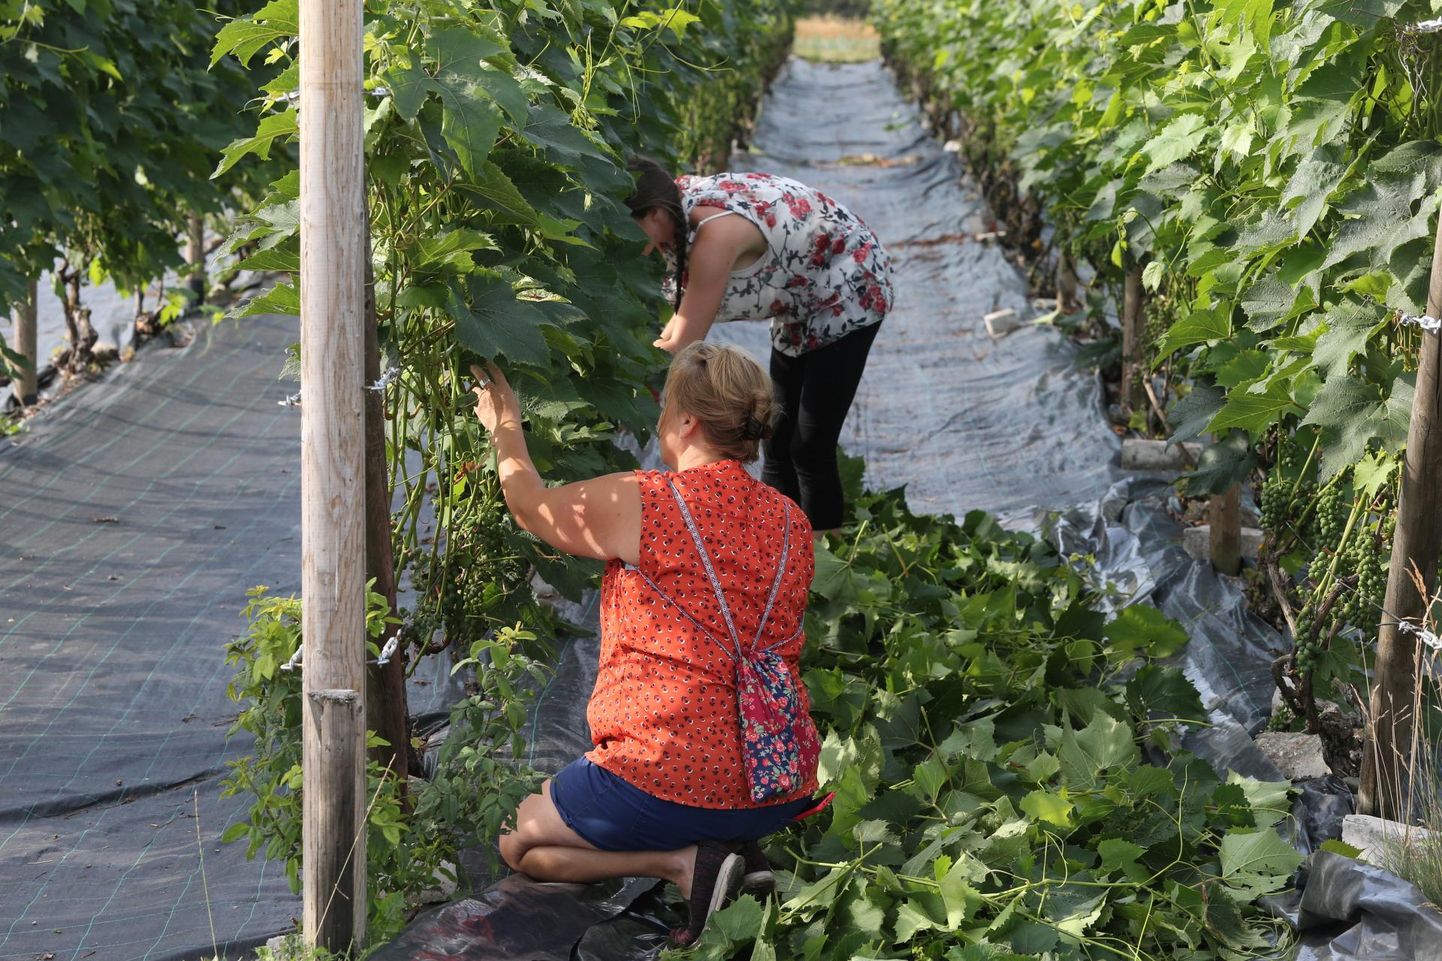 Maaülikooli aiandustudengid käivad juuli keskpaigast saati Rõhu kaitseaias pea iga nädal abis viinamarjalehti korjamas. Katse tarvis on lehed juba silohoidlasse viidud, viinapuid tuleb aga marjade küpsemiseks nüüdki lehtedest tühjendada.